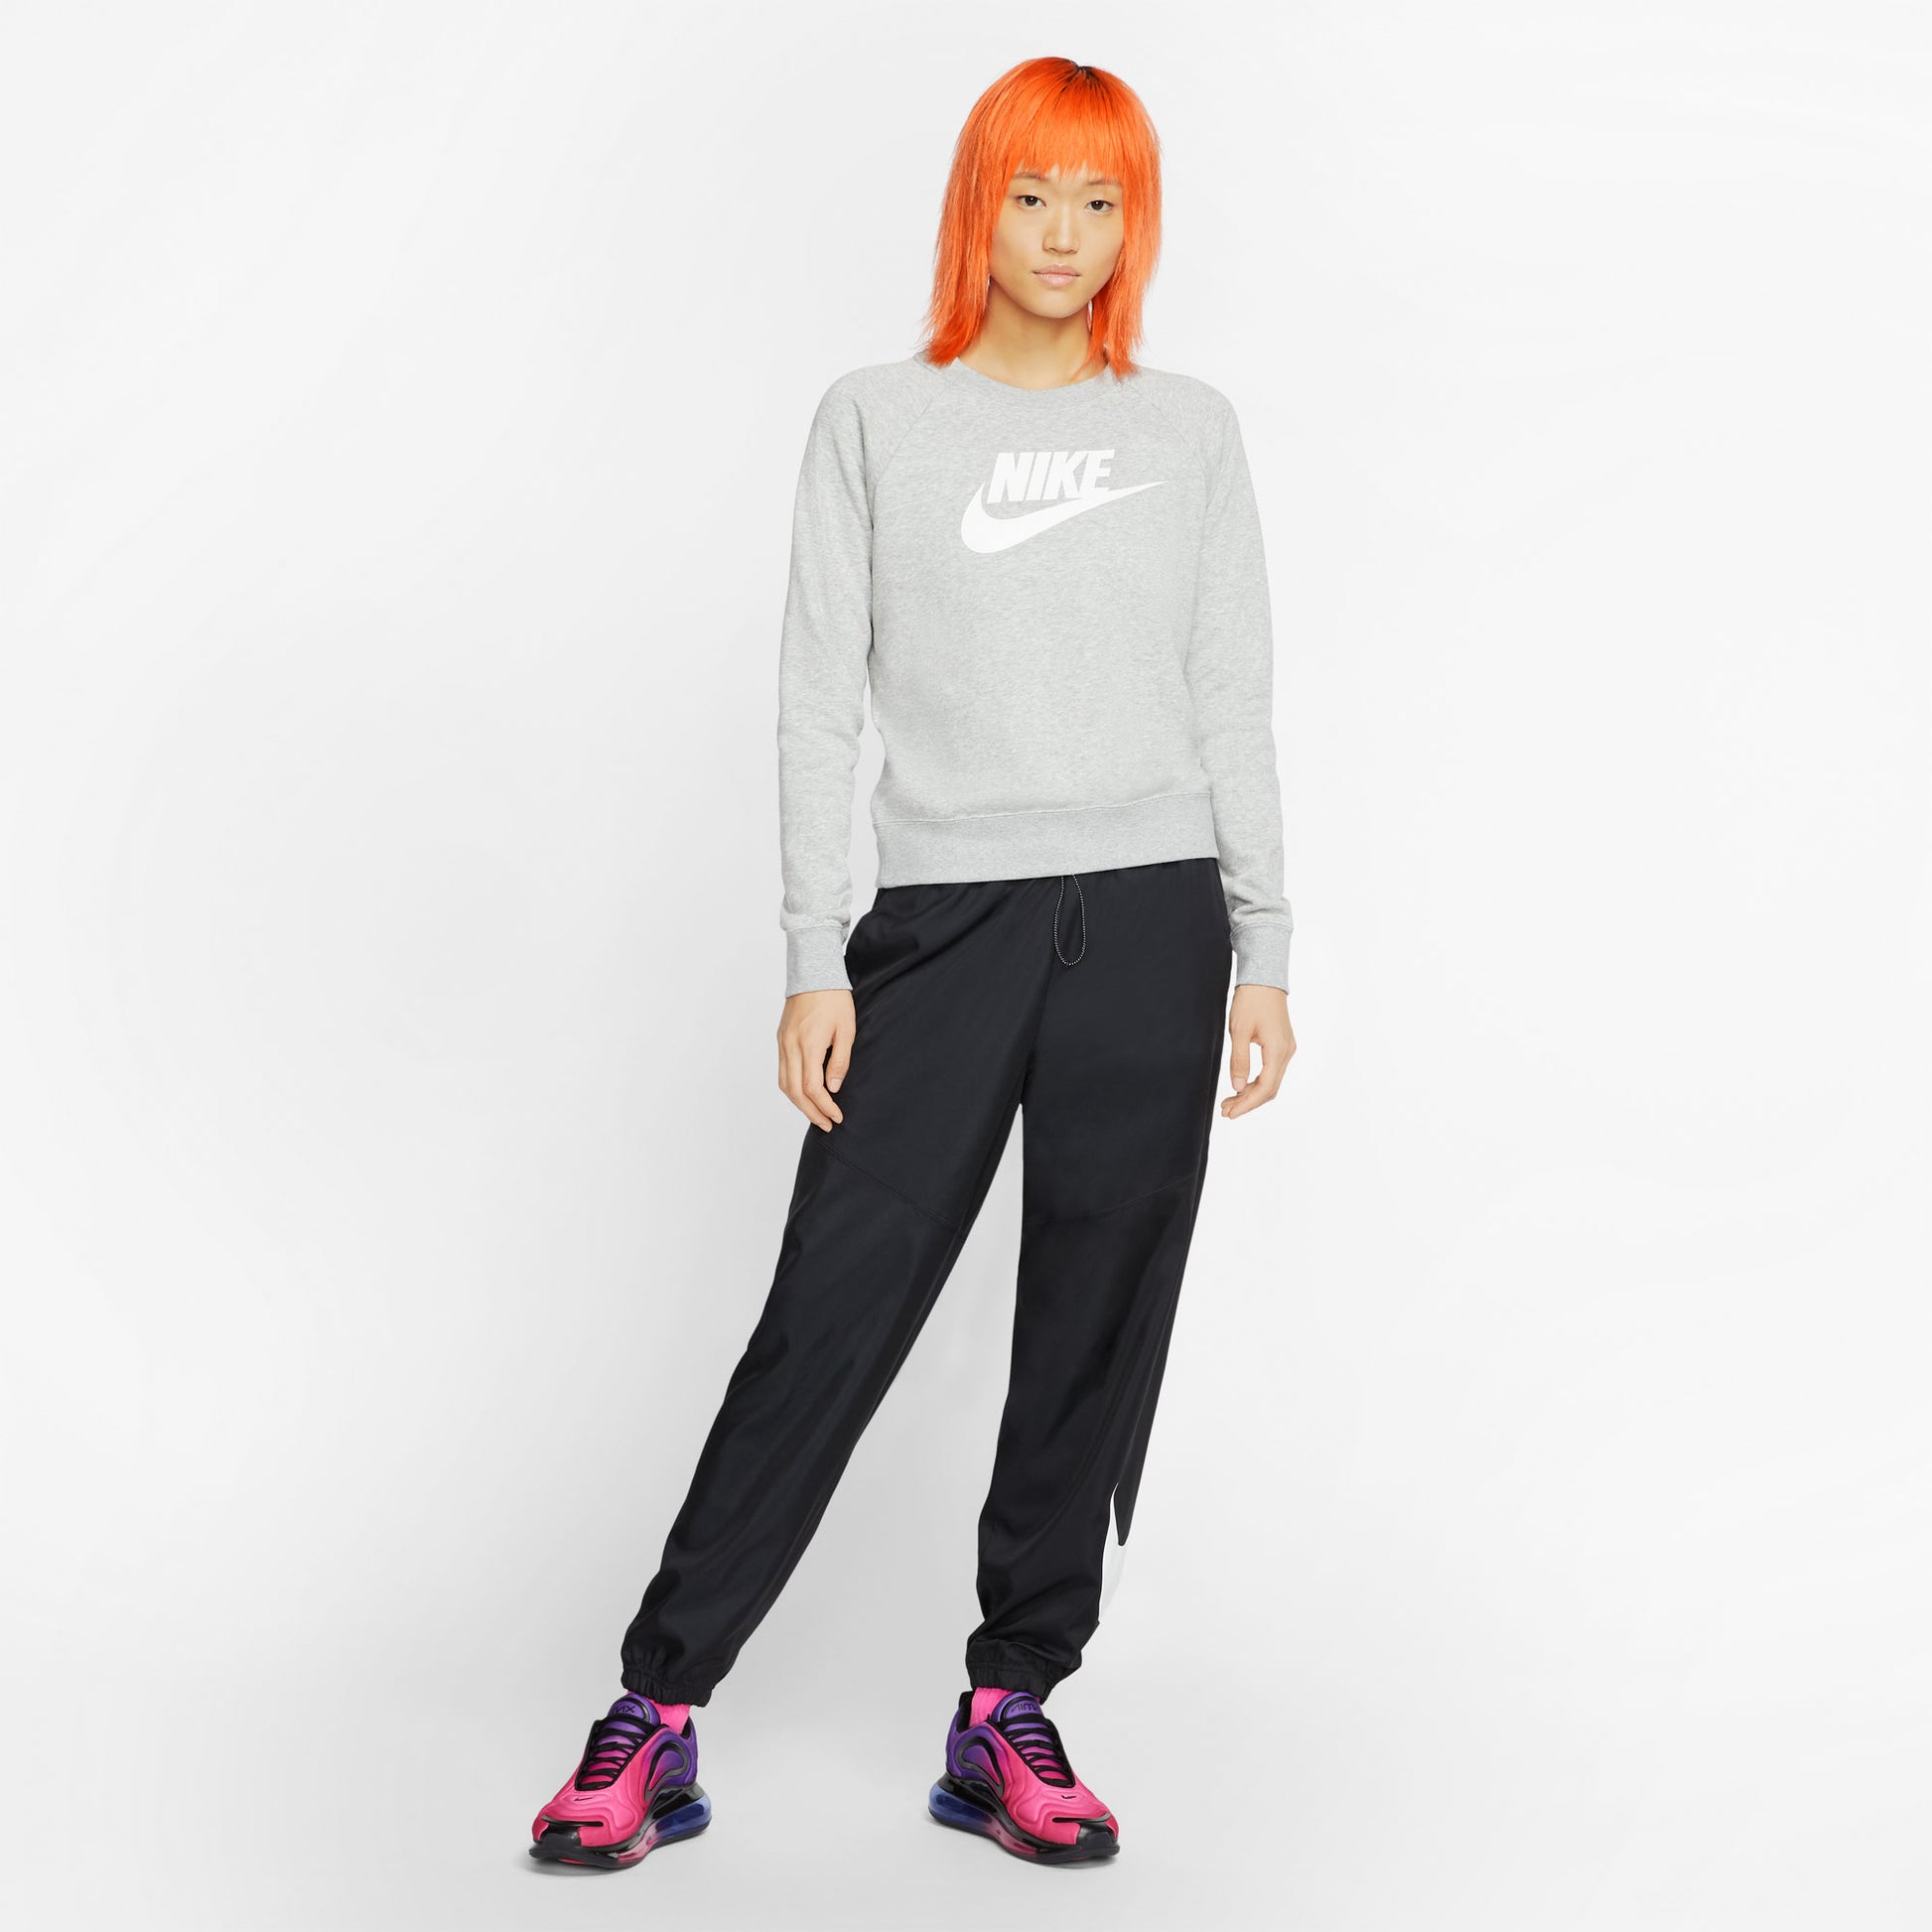 Nike Essential Women's Swoosh Fleece Crew Sweater Grey (3)